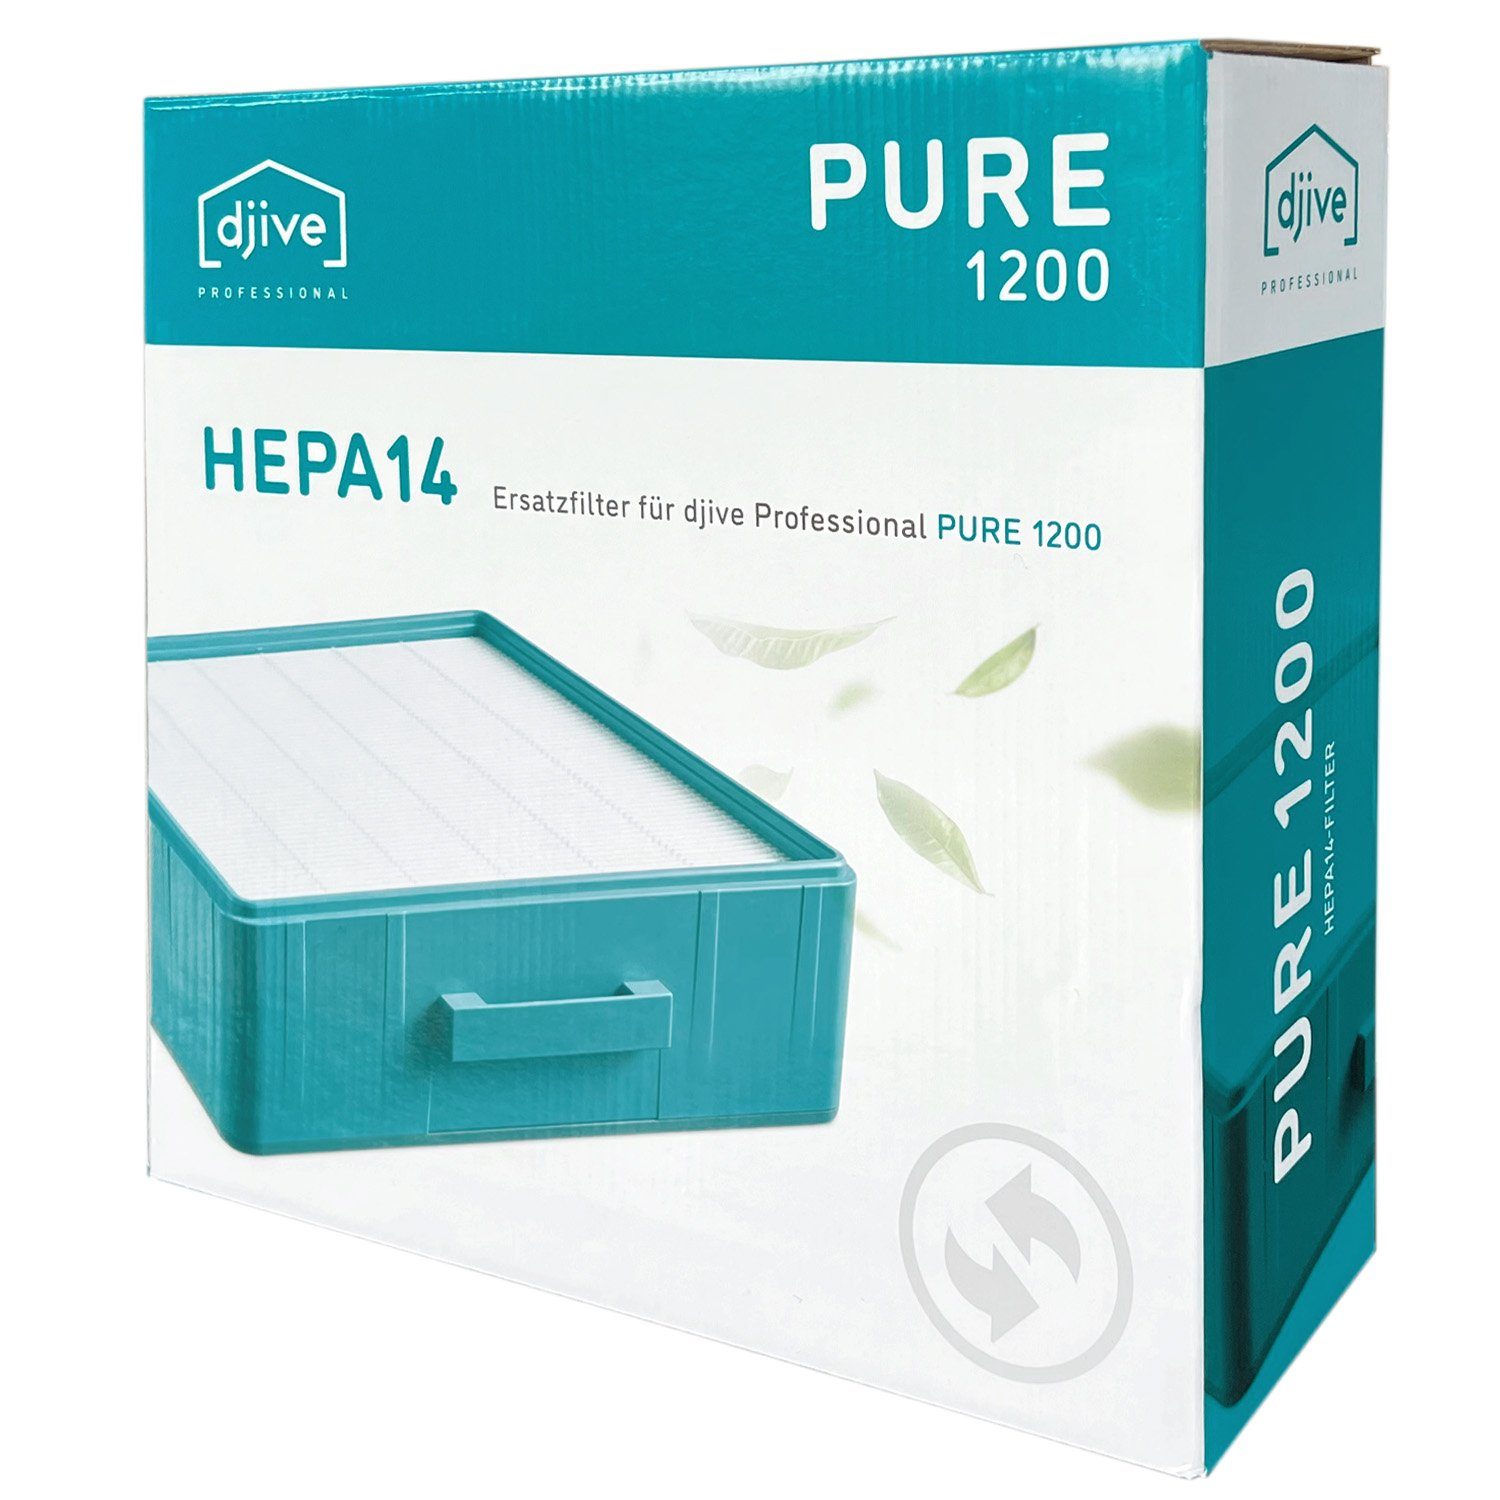 djive HEPA-Filter H14, Zubehör für djive Professional PURE1200 Luftreiniger, filtert 99,995% der Feinstaubpartikel, Pollen uvm. aus der Luft